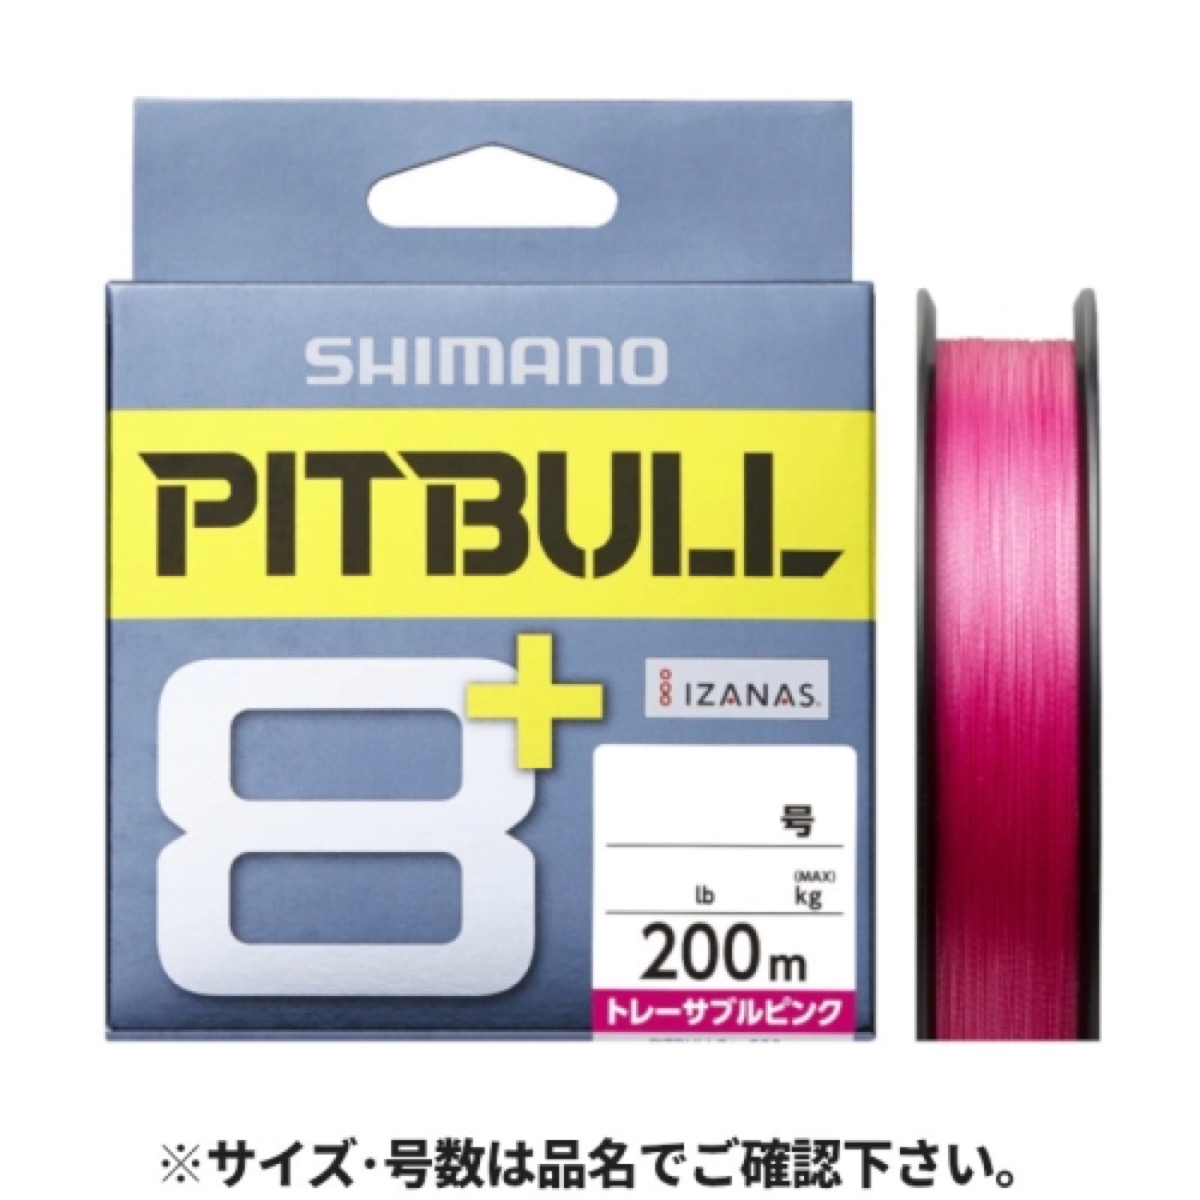 シマノ(SHIMANO) ピットブル8+ LD-M61T 200m 1.0号 トレーサブルピンク ネコポス(メール便)対象商品